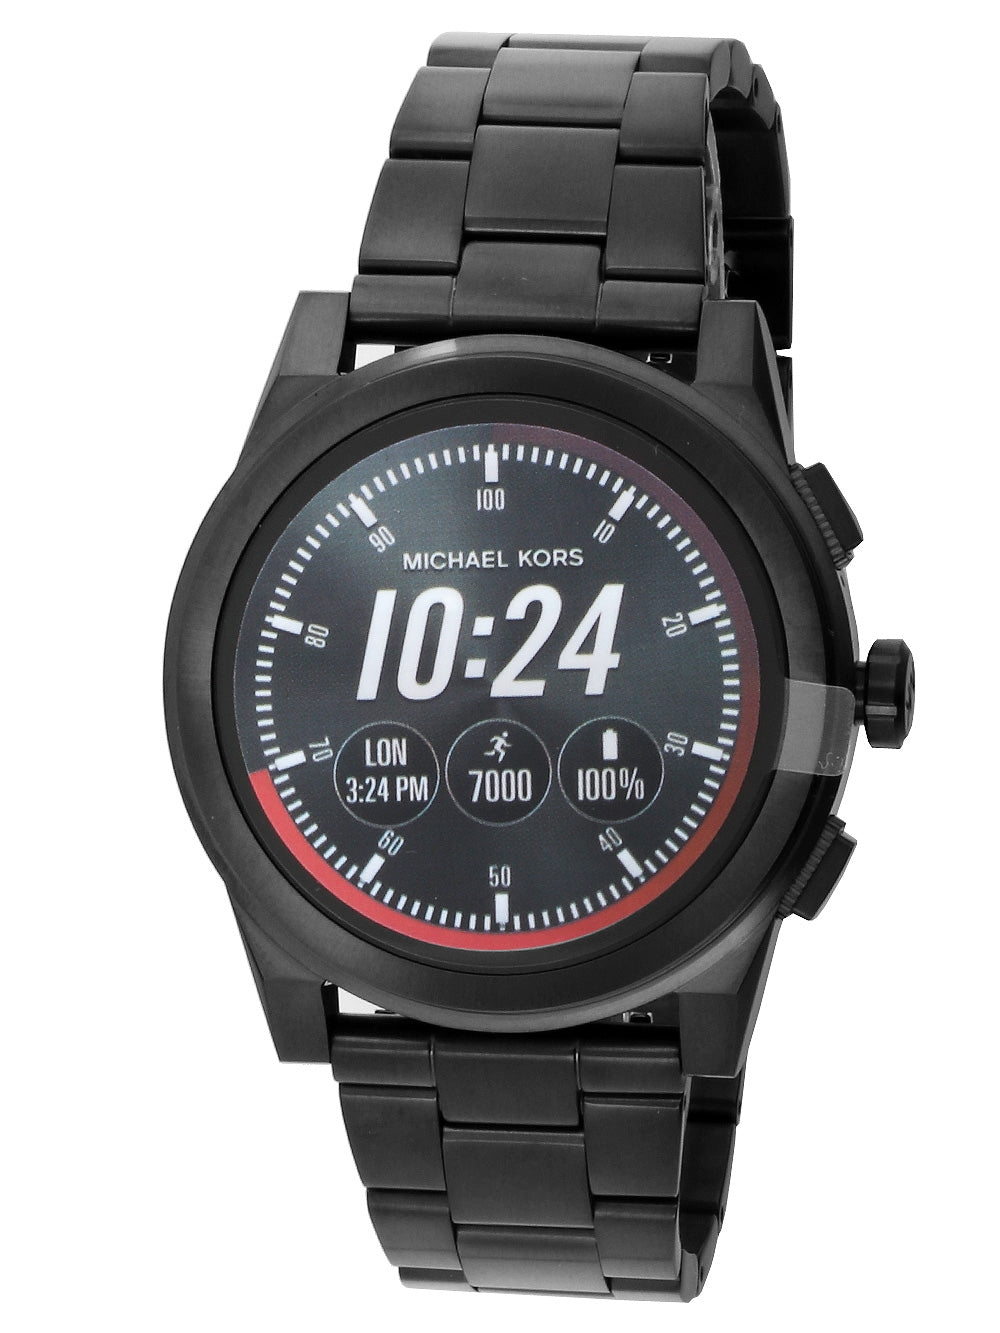 smartwatch michael kors mkt5029